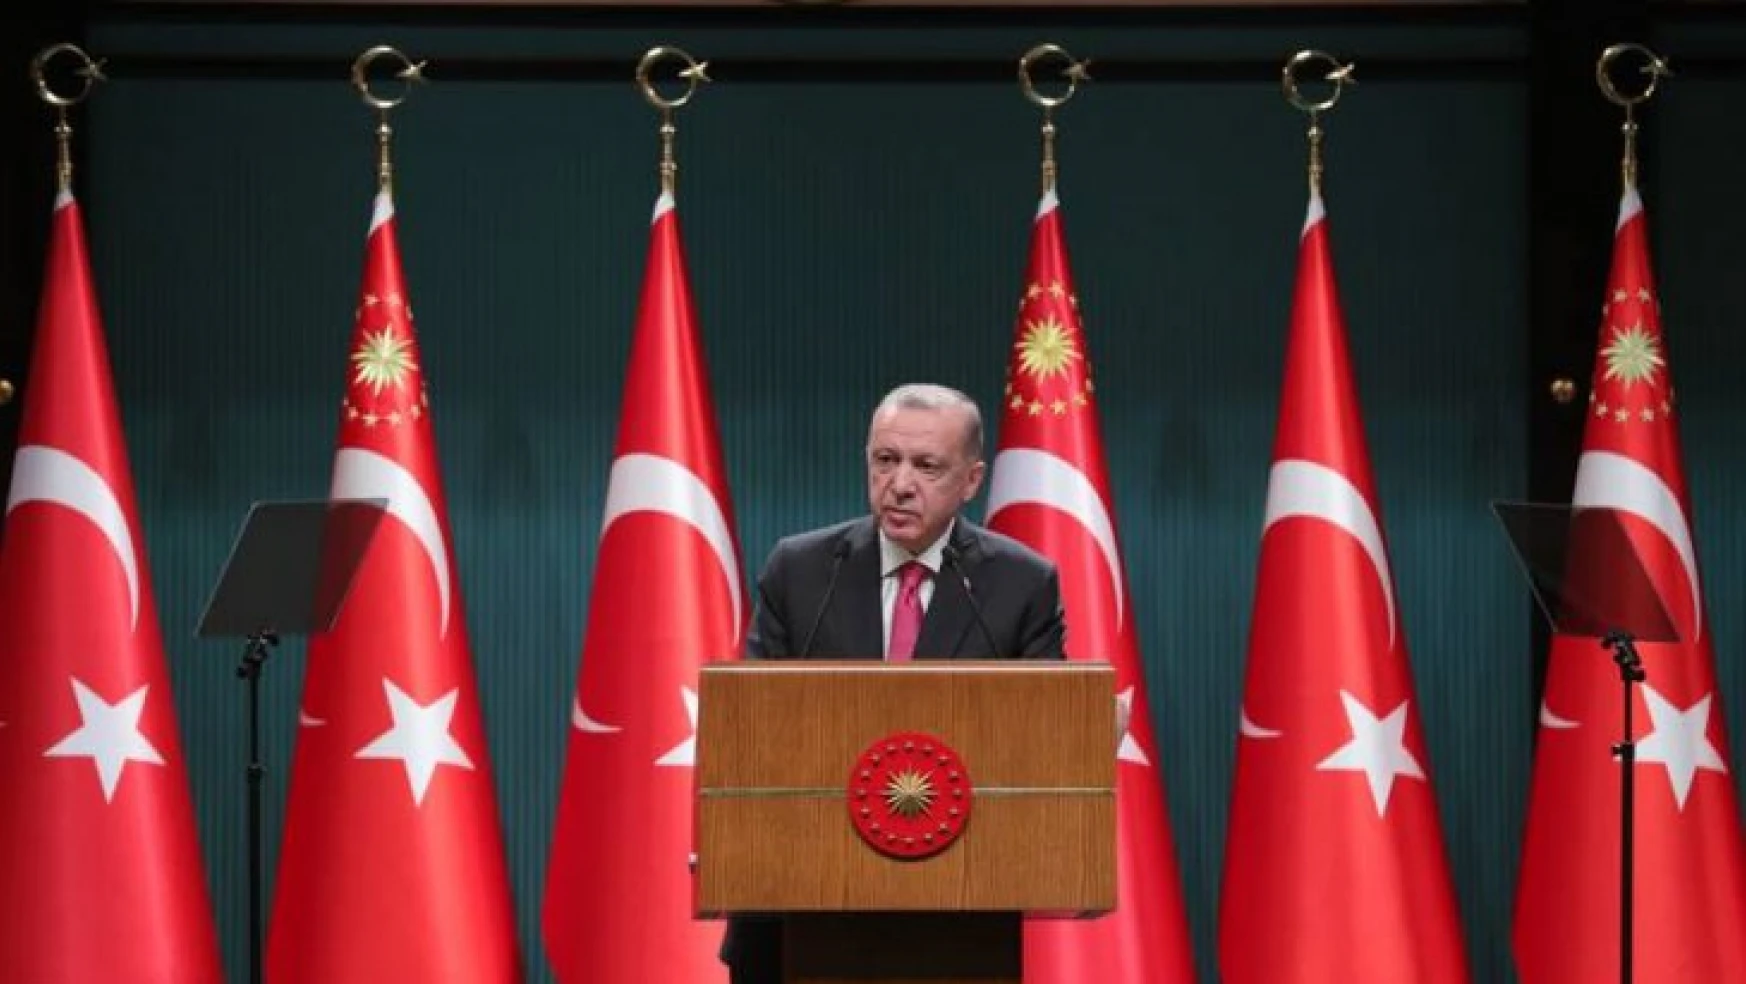 Cumhurbaşkanı Erdoğan'dan Suriye'ye yeni operasyon sinyali